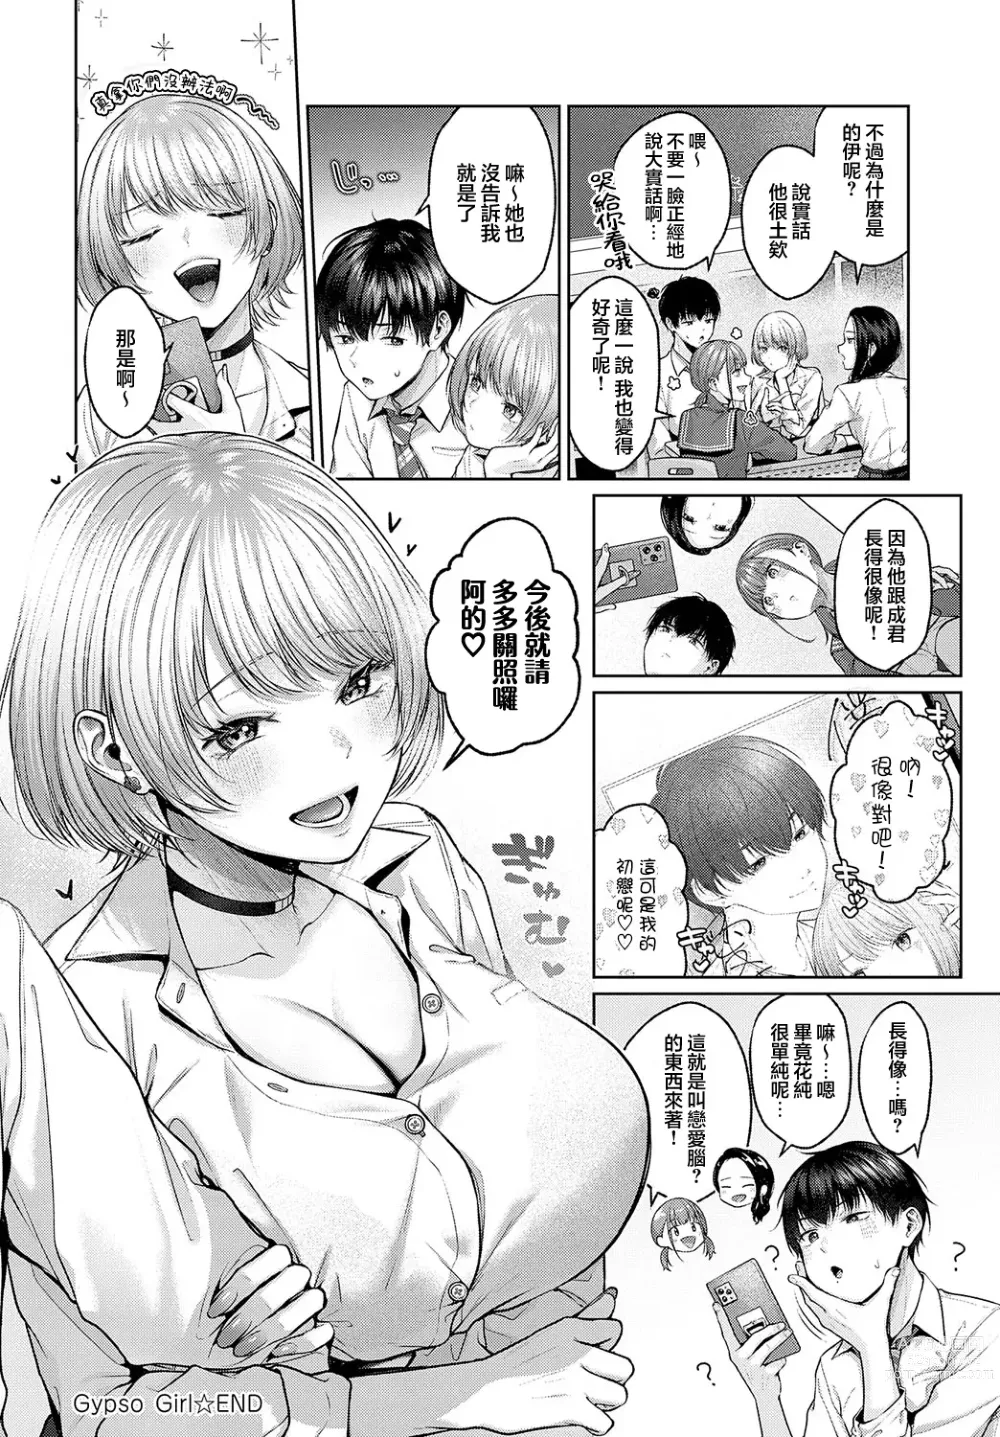 Page 26 of manga Gypso Girl